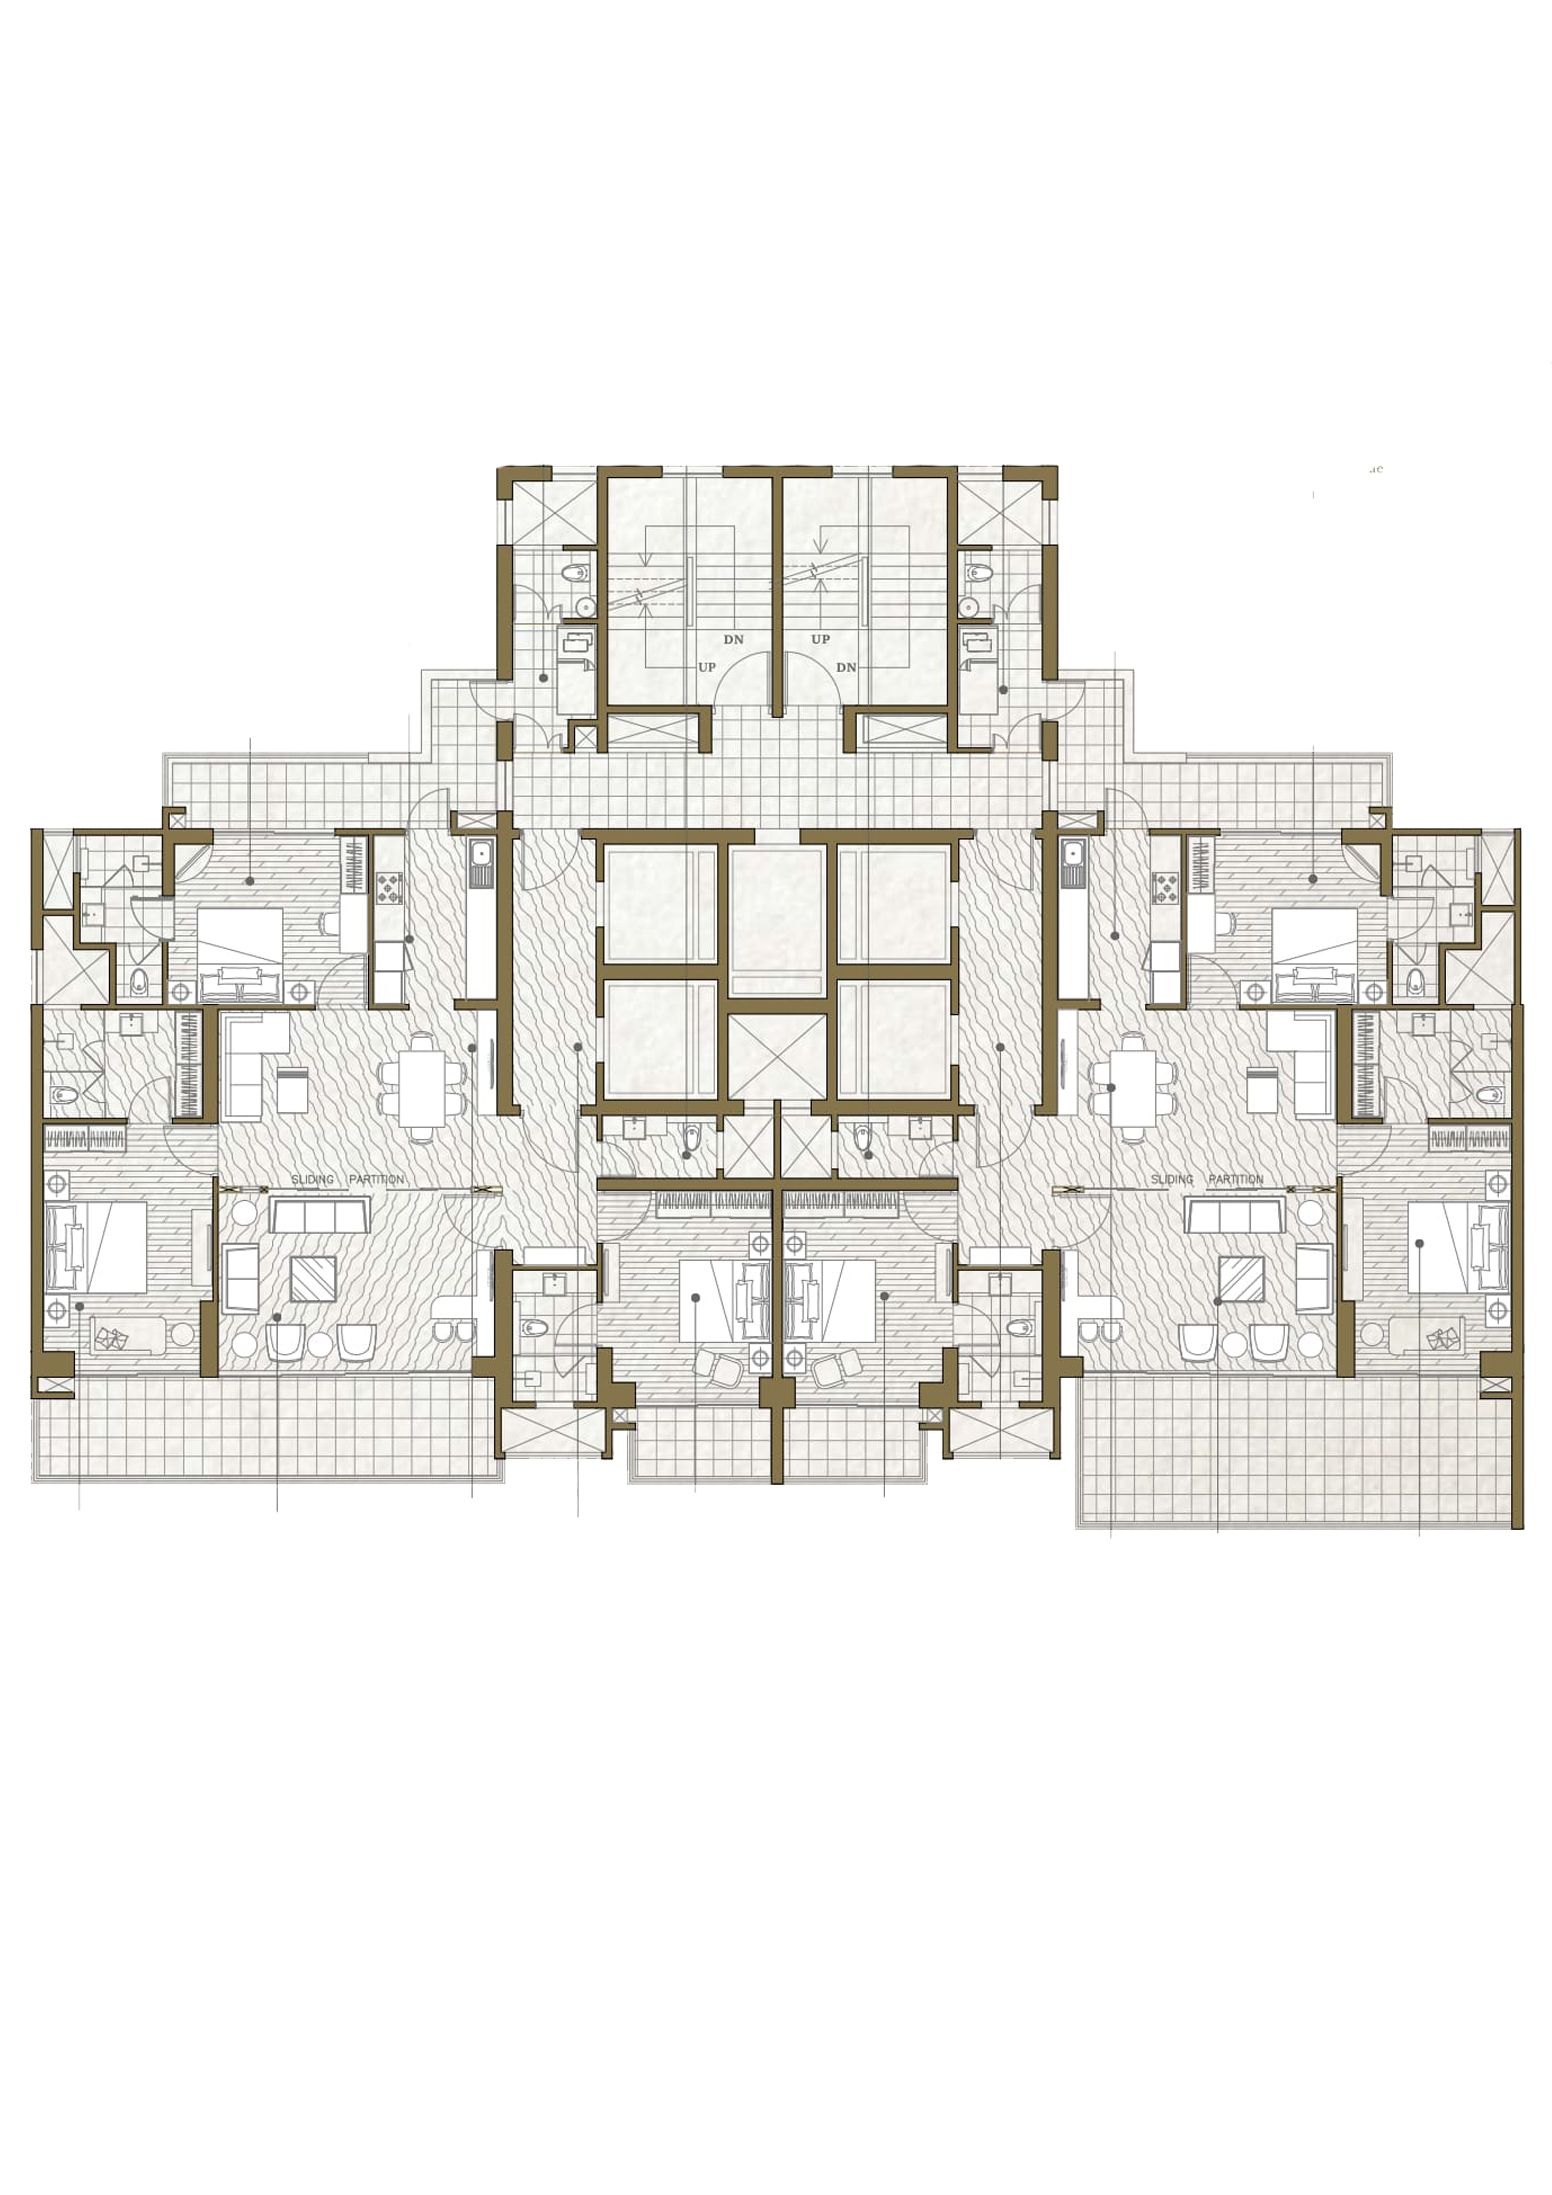 Condominium 1A (Wing 6, 8)